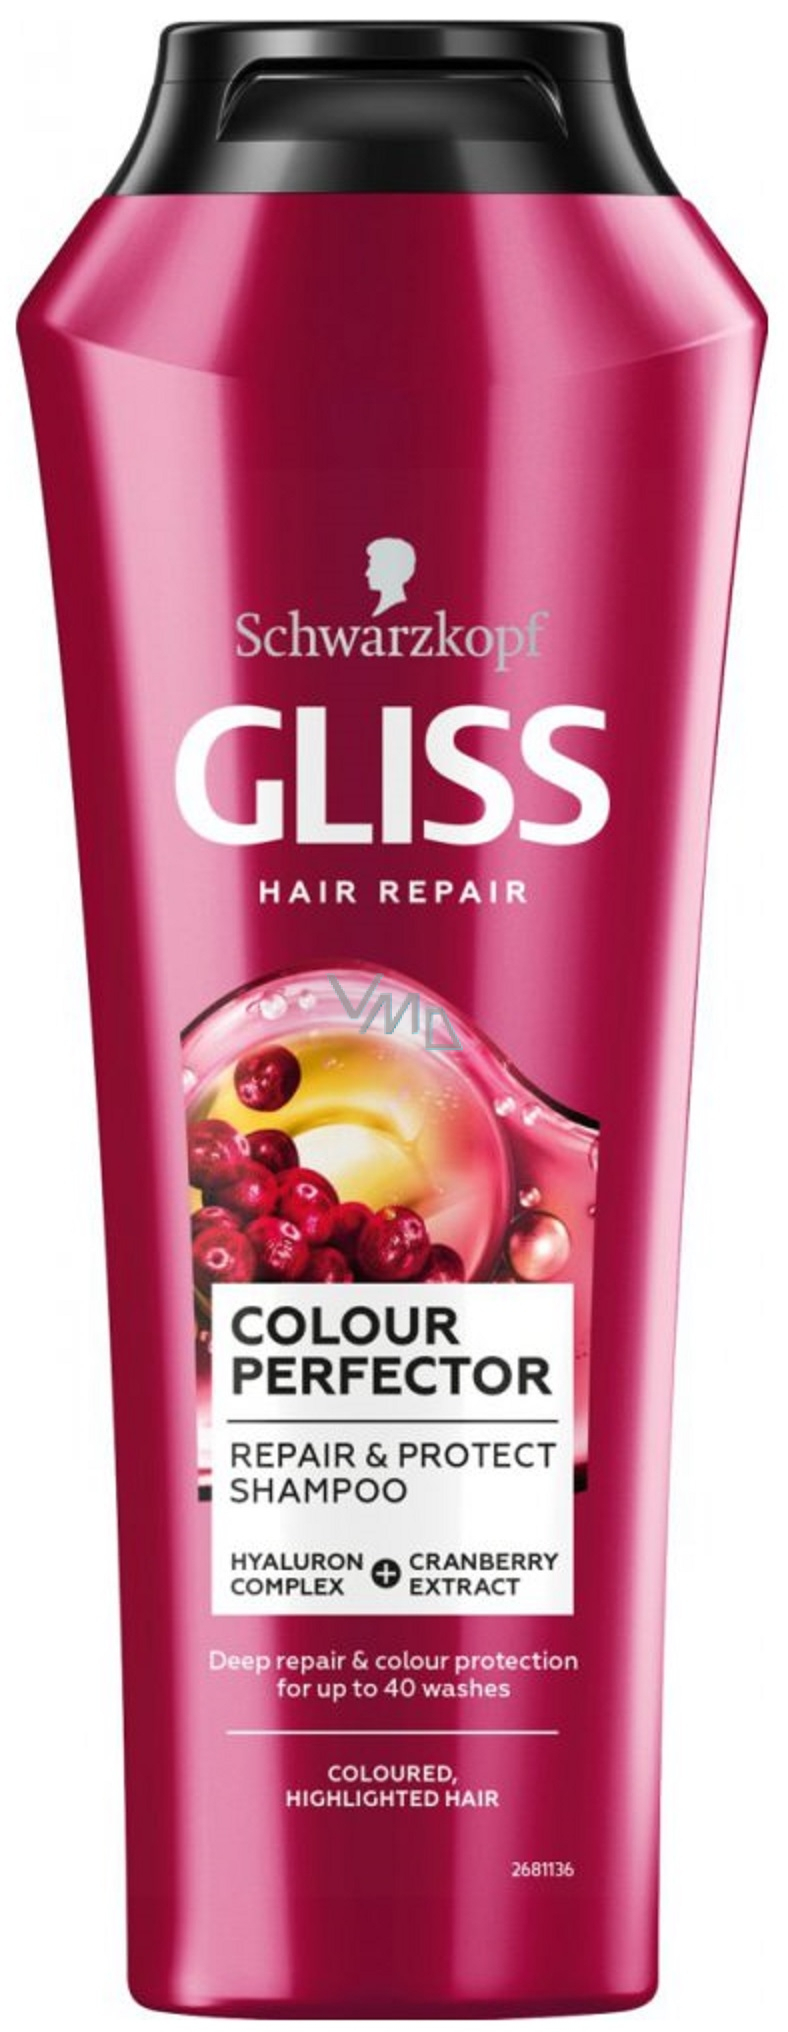 szampon z gliss kur ultimate color